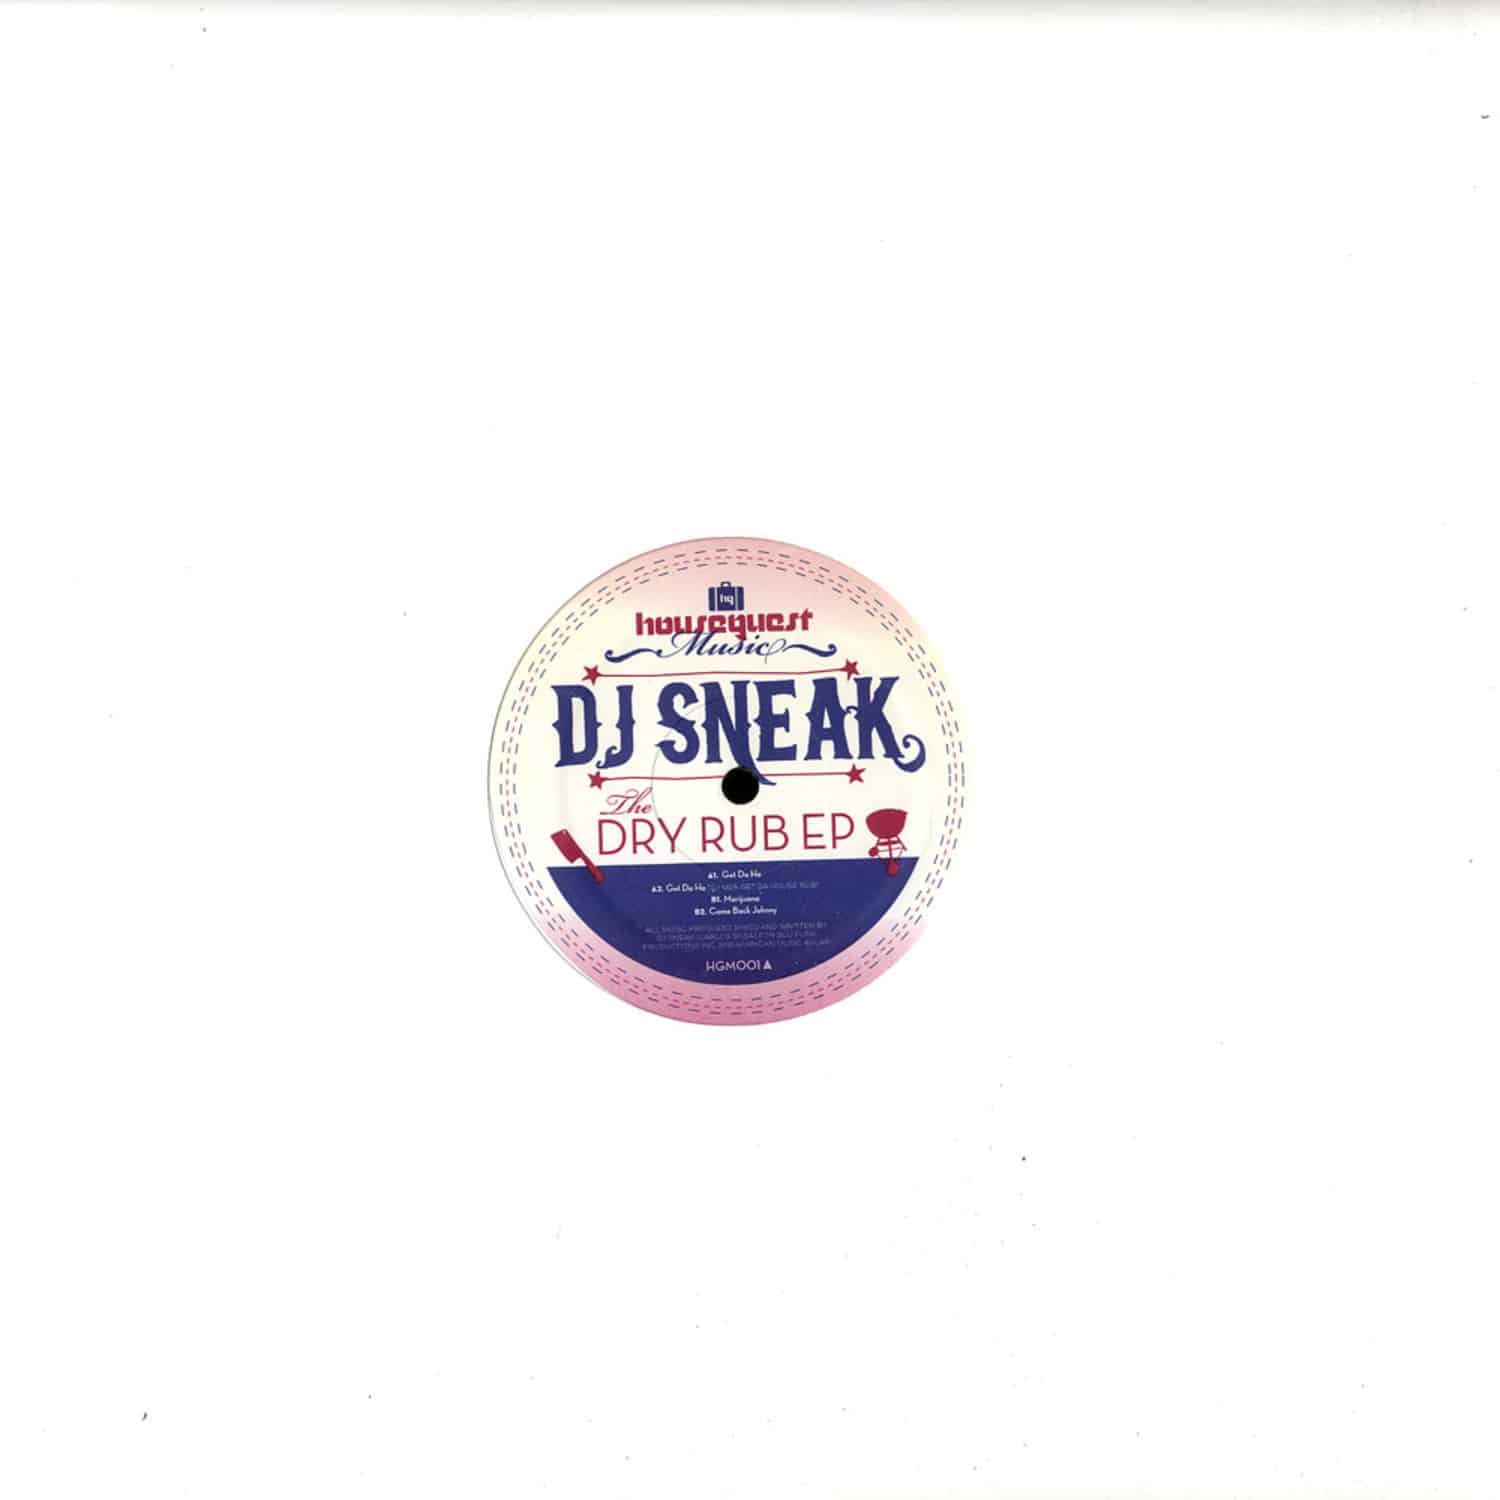 DJ Sneak - DRY RUB EP